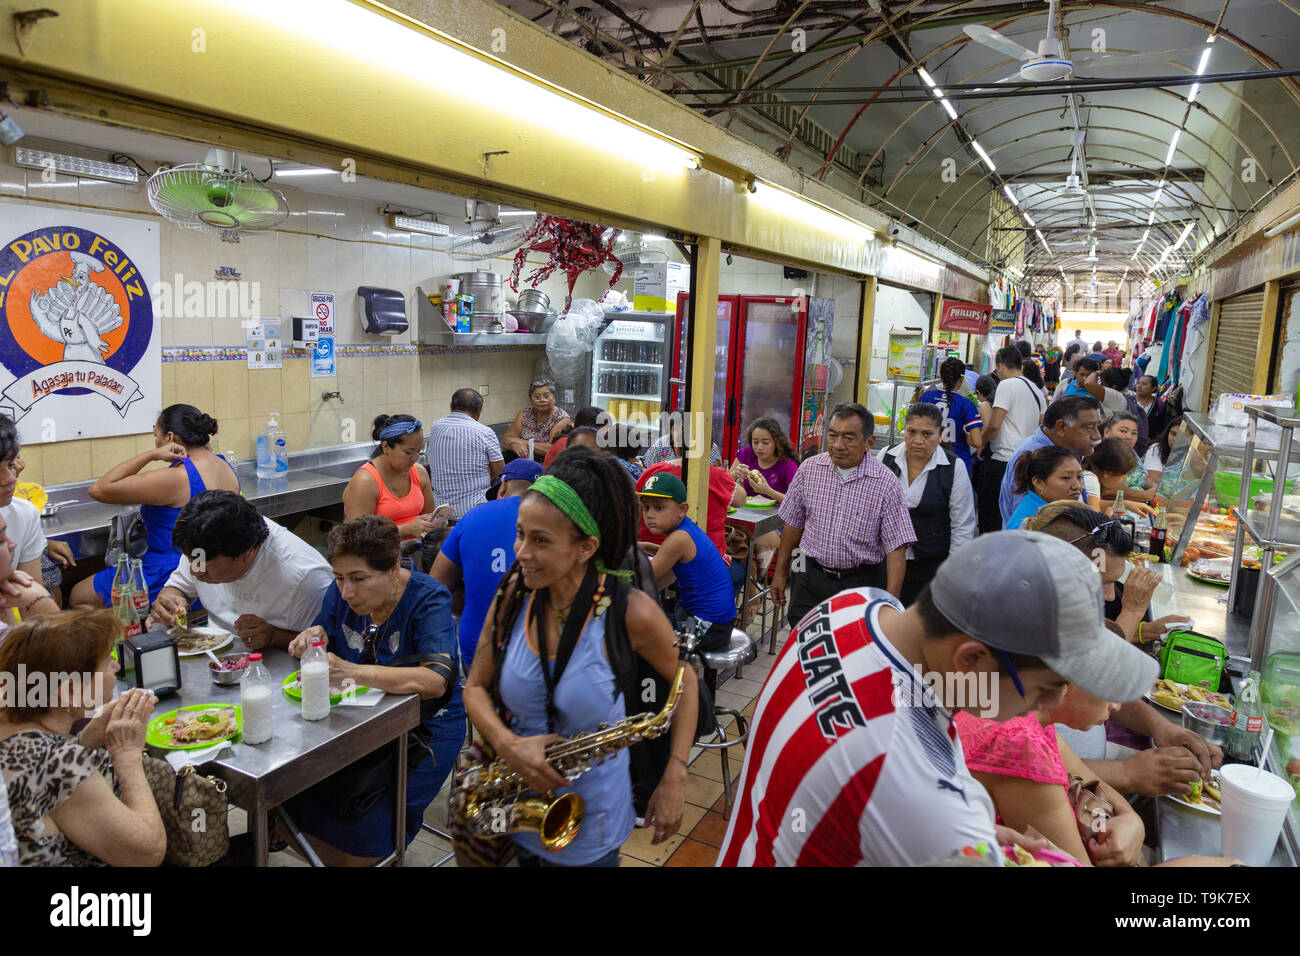 Mexique - mode de vie des gens de manger sur le marché alimentaire, Merida, Yucatan, Mexique Amérique Latine Banque D'Images